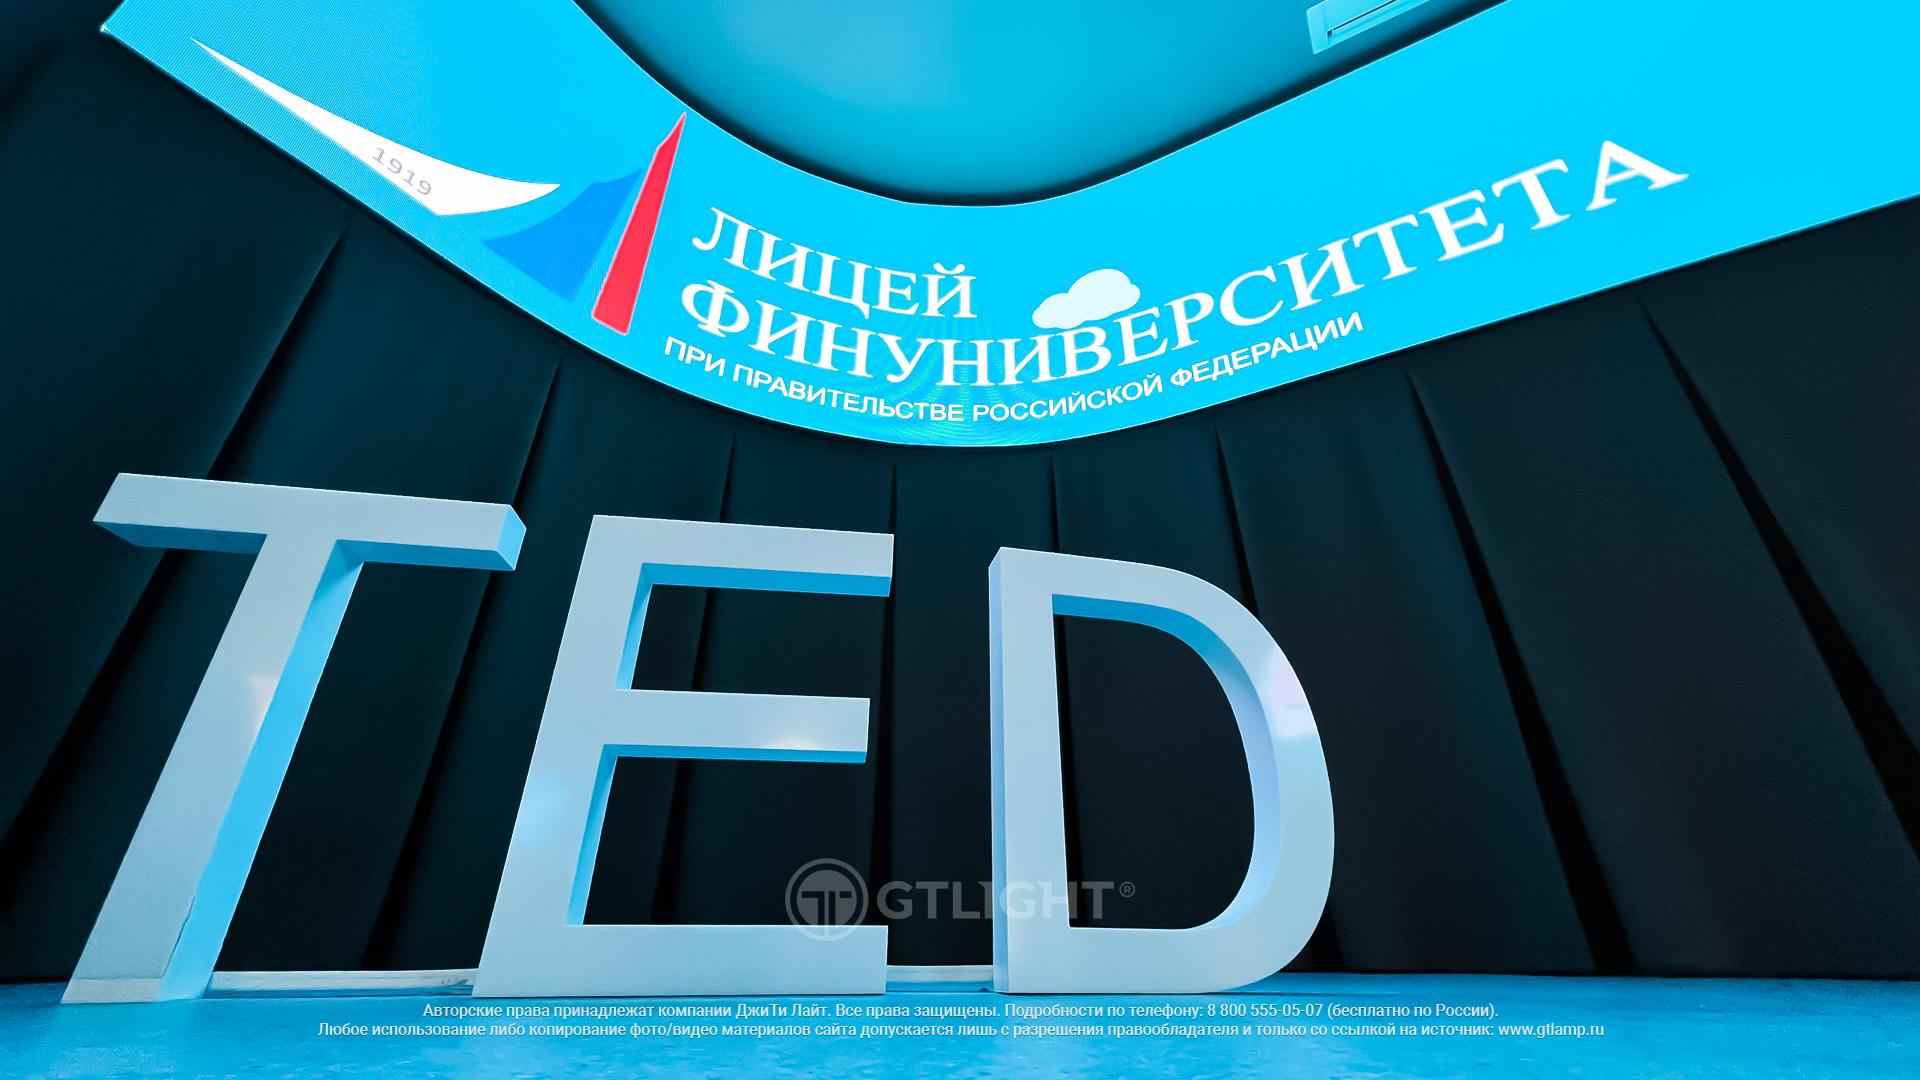 Гибкий светодиодный экран для актового зала, Москва, Финансовый университет, фото 5